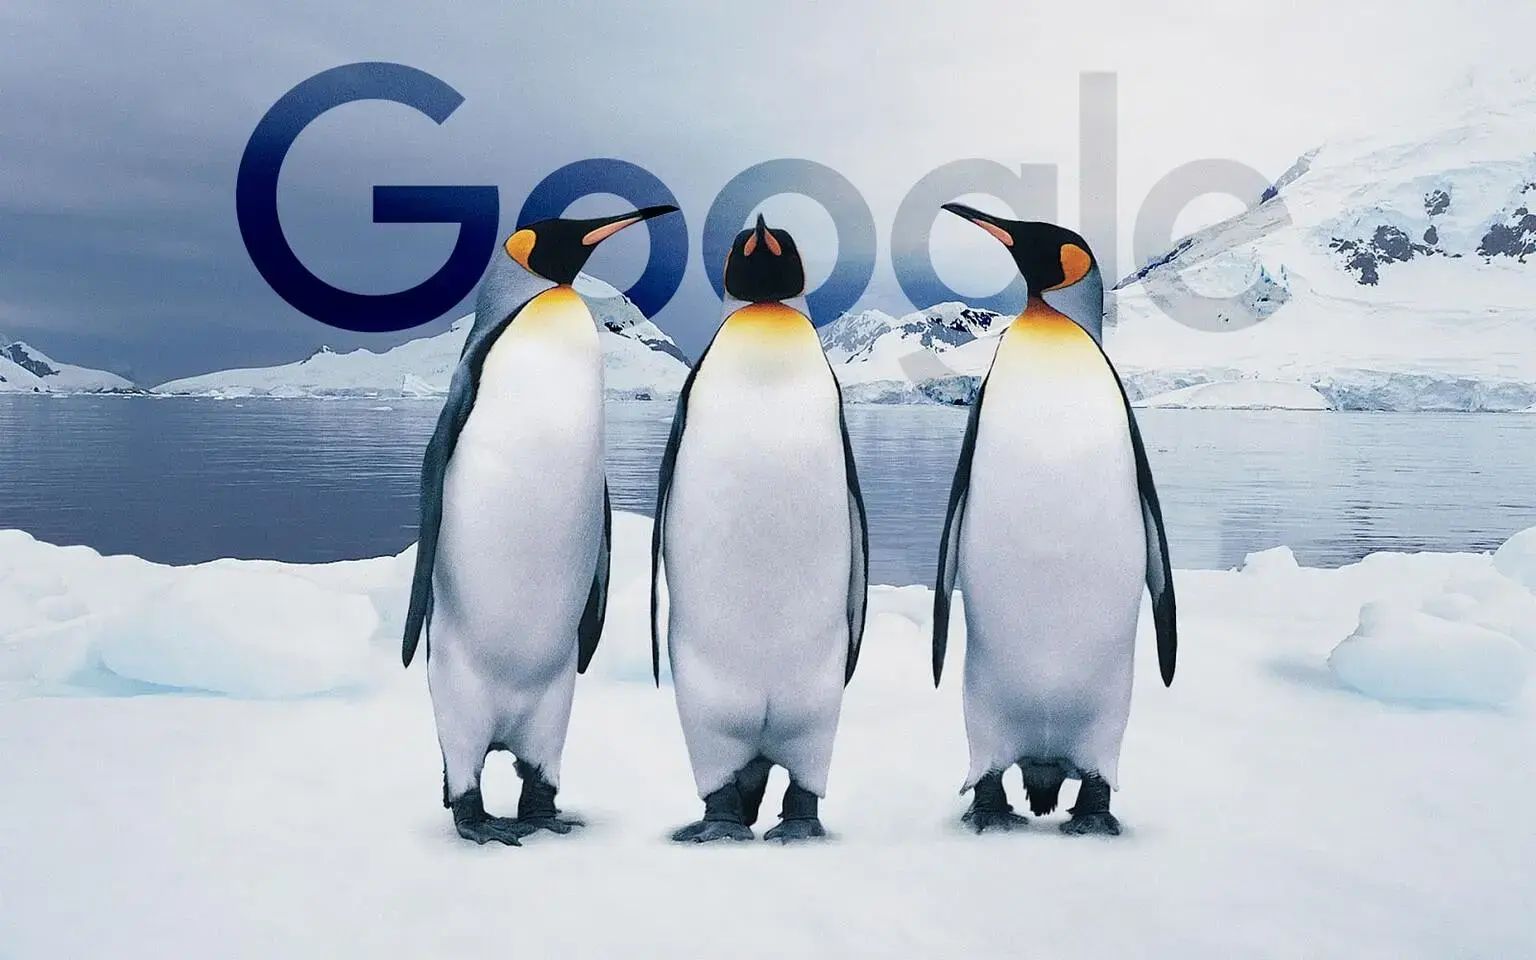 معرفی الگوریتم پنگوئن (Penguin Algorithm) | آخرین نسخه معرفی شده الگوریتم پنگوئن 2016